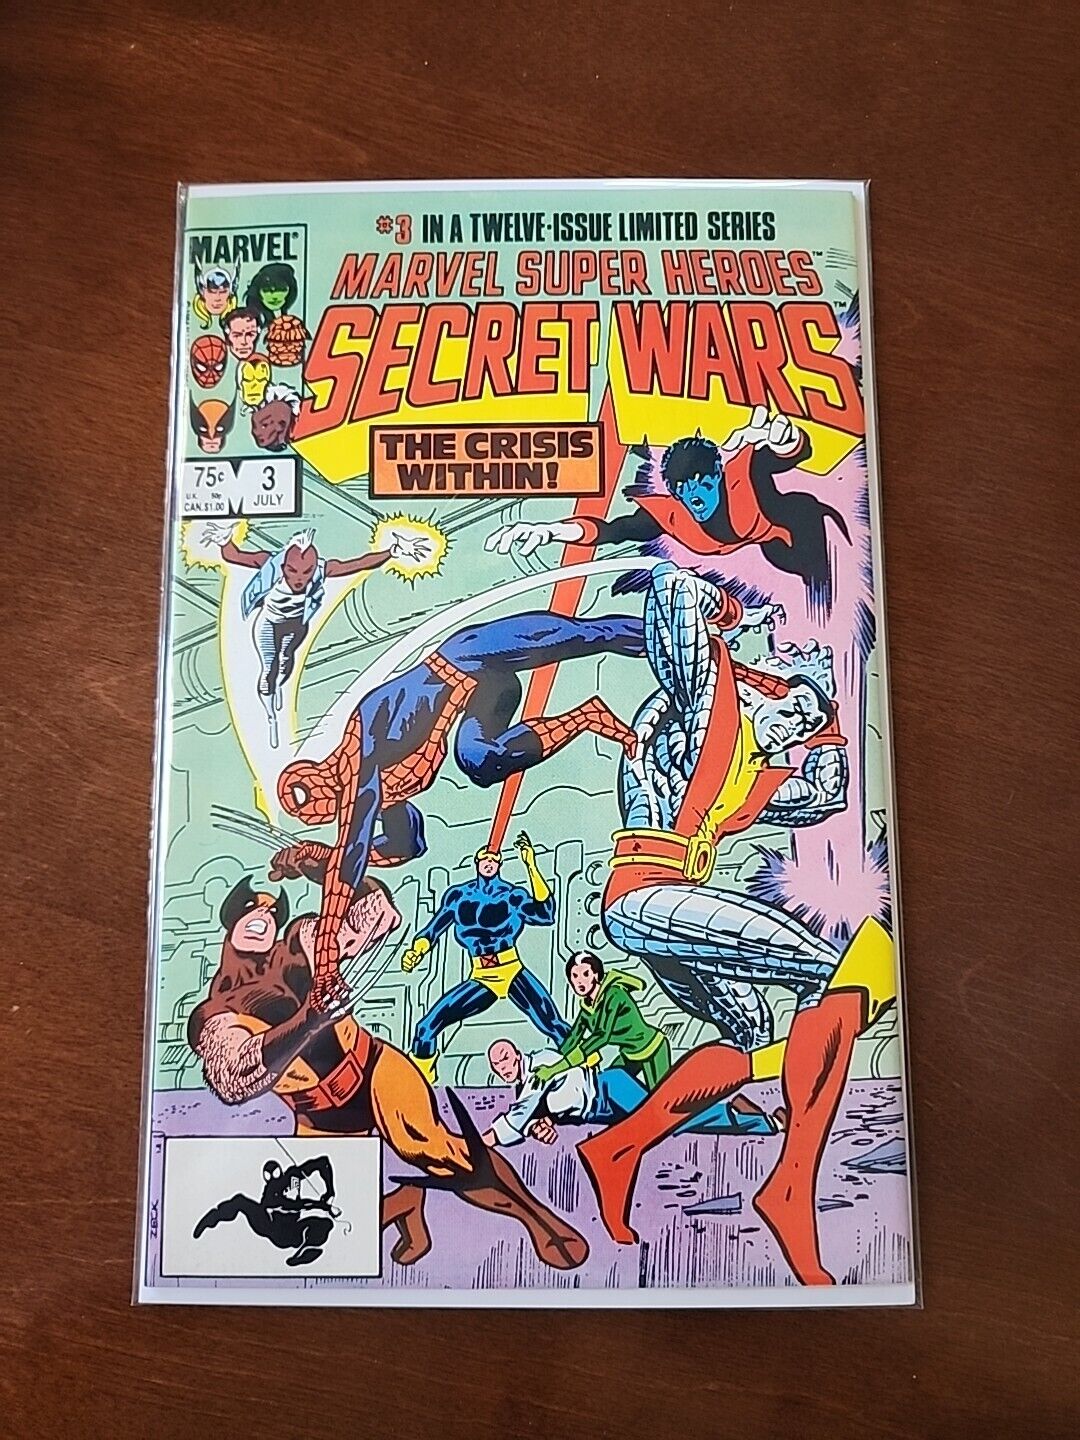 Marvel Super-Heroes Secret Wars #3 (Marvel Comics July 1984)